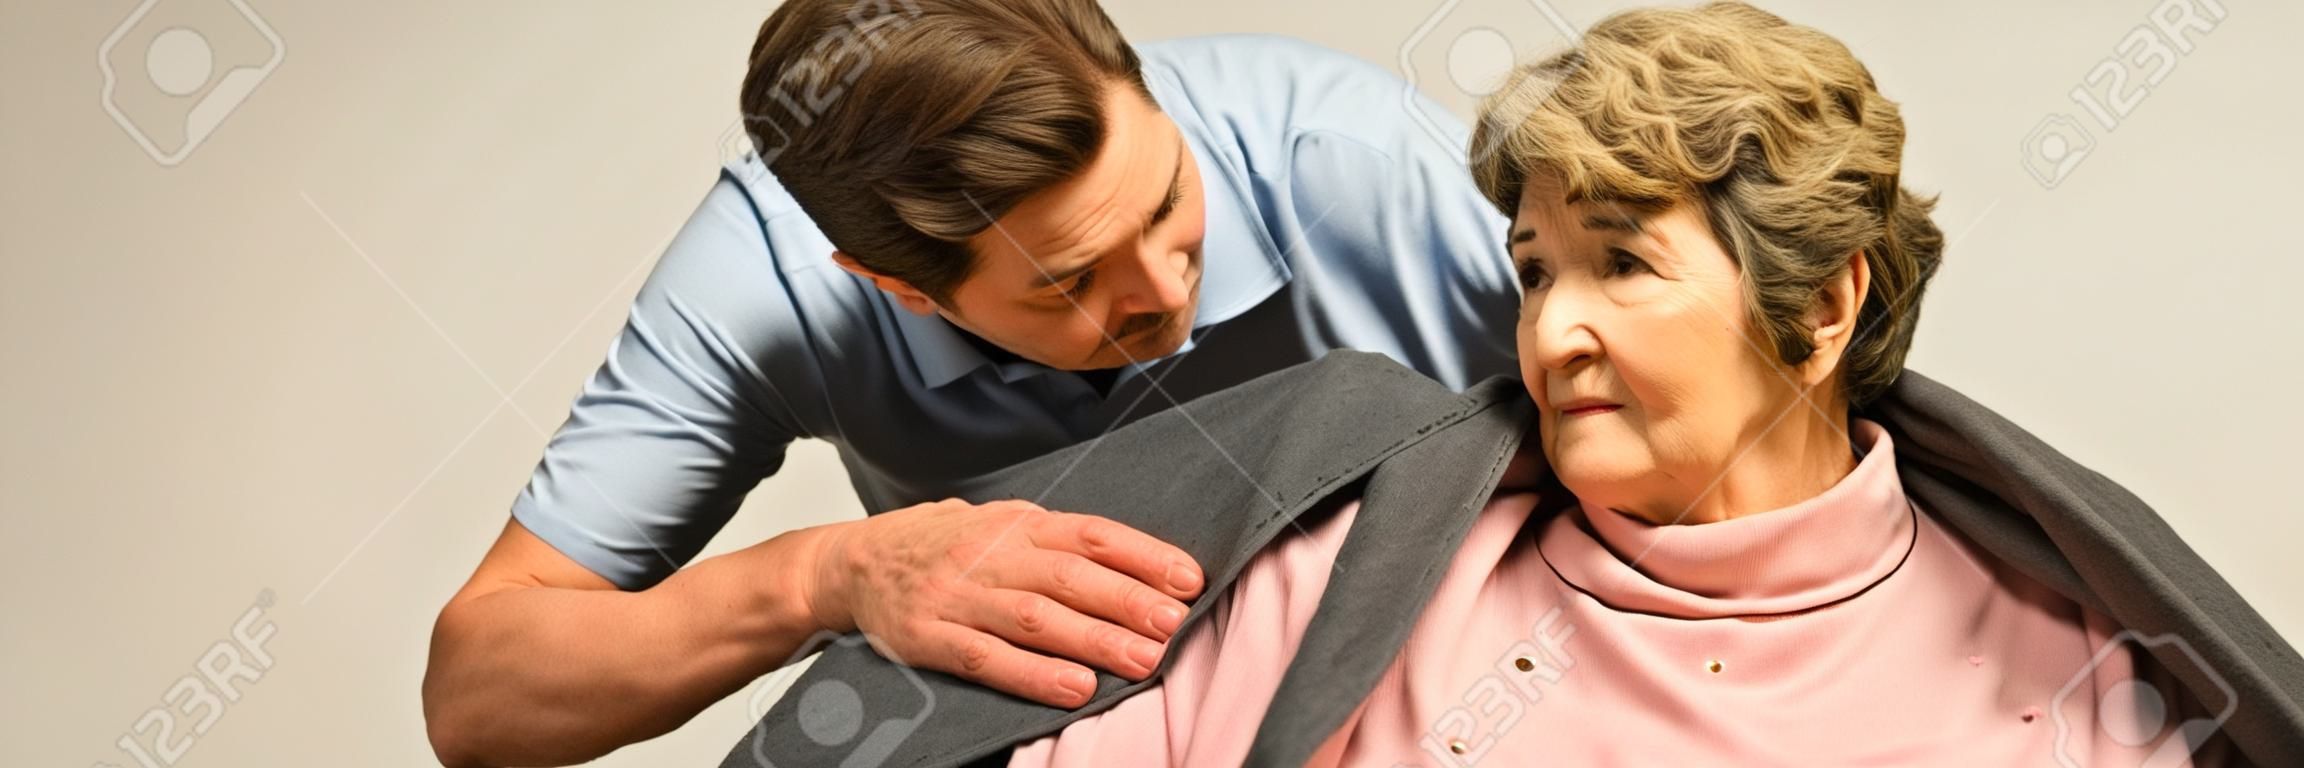 男性有幫助護理人員照顧年長的女人